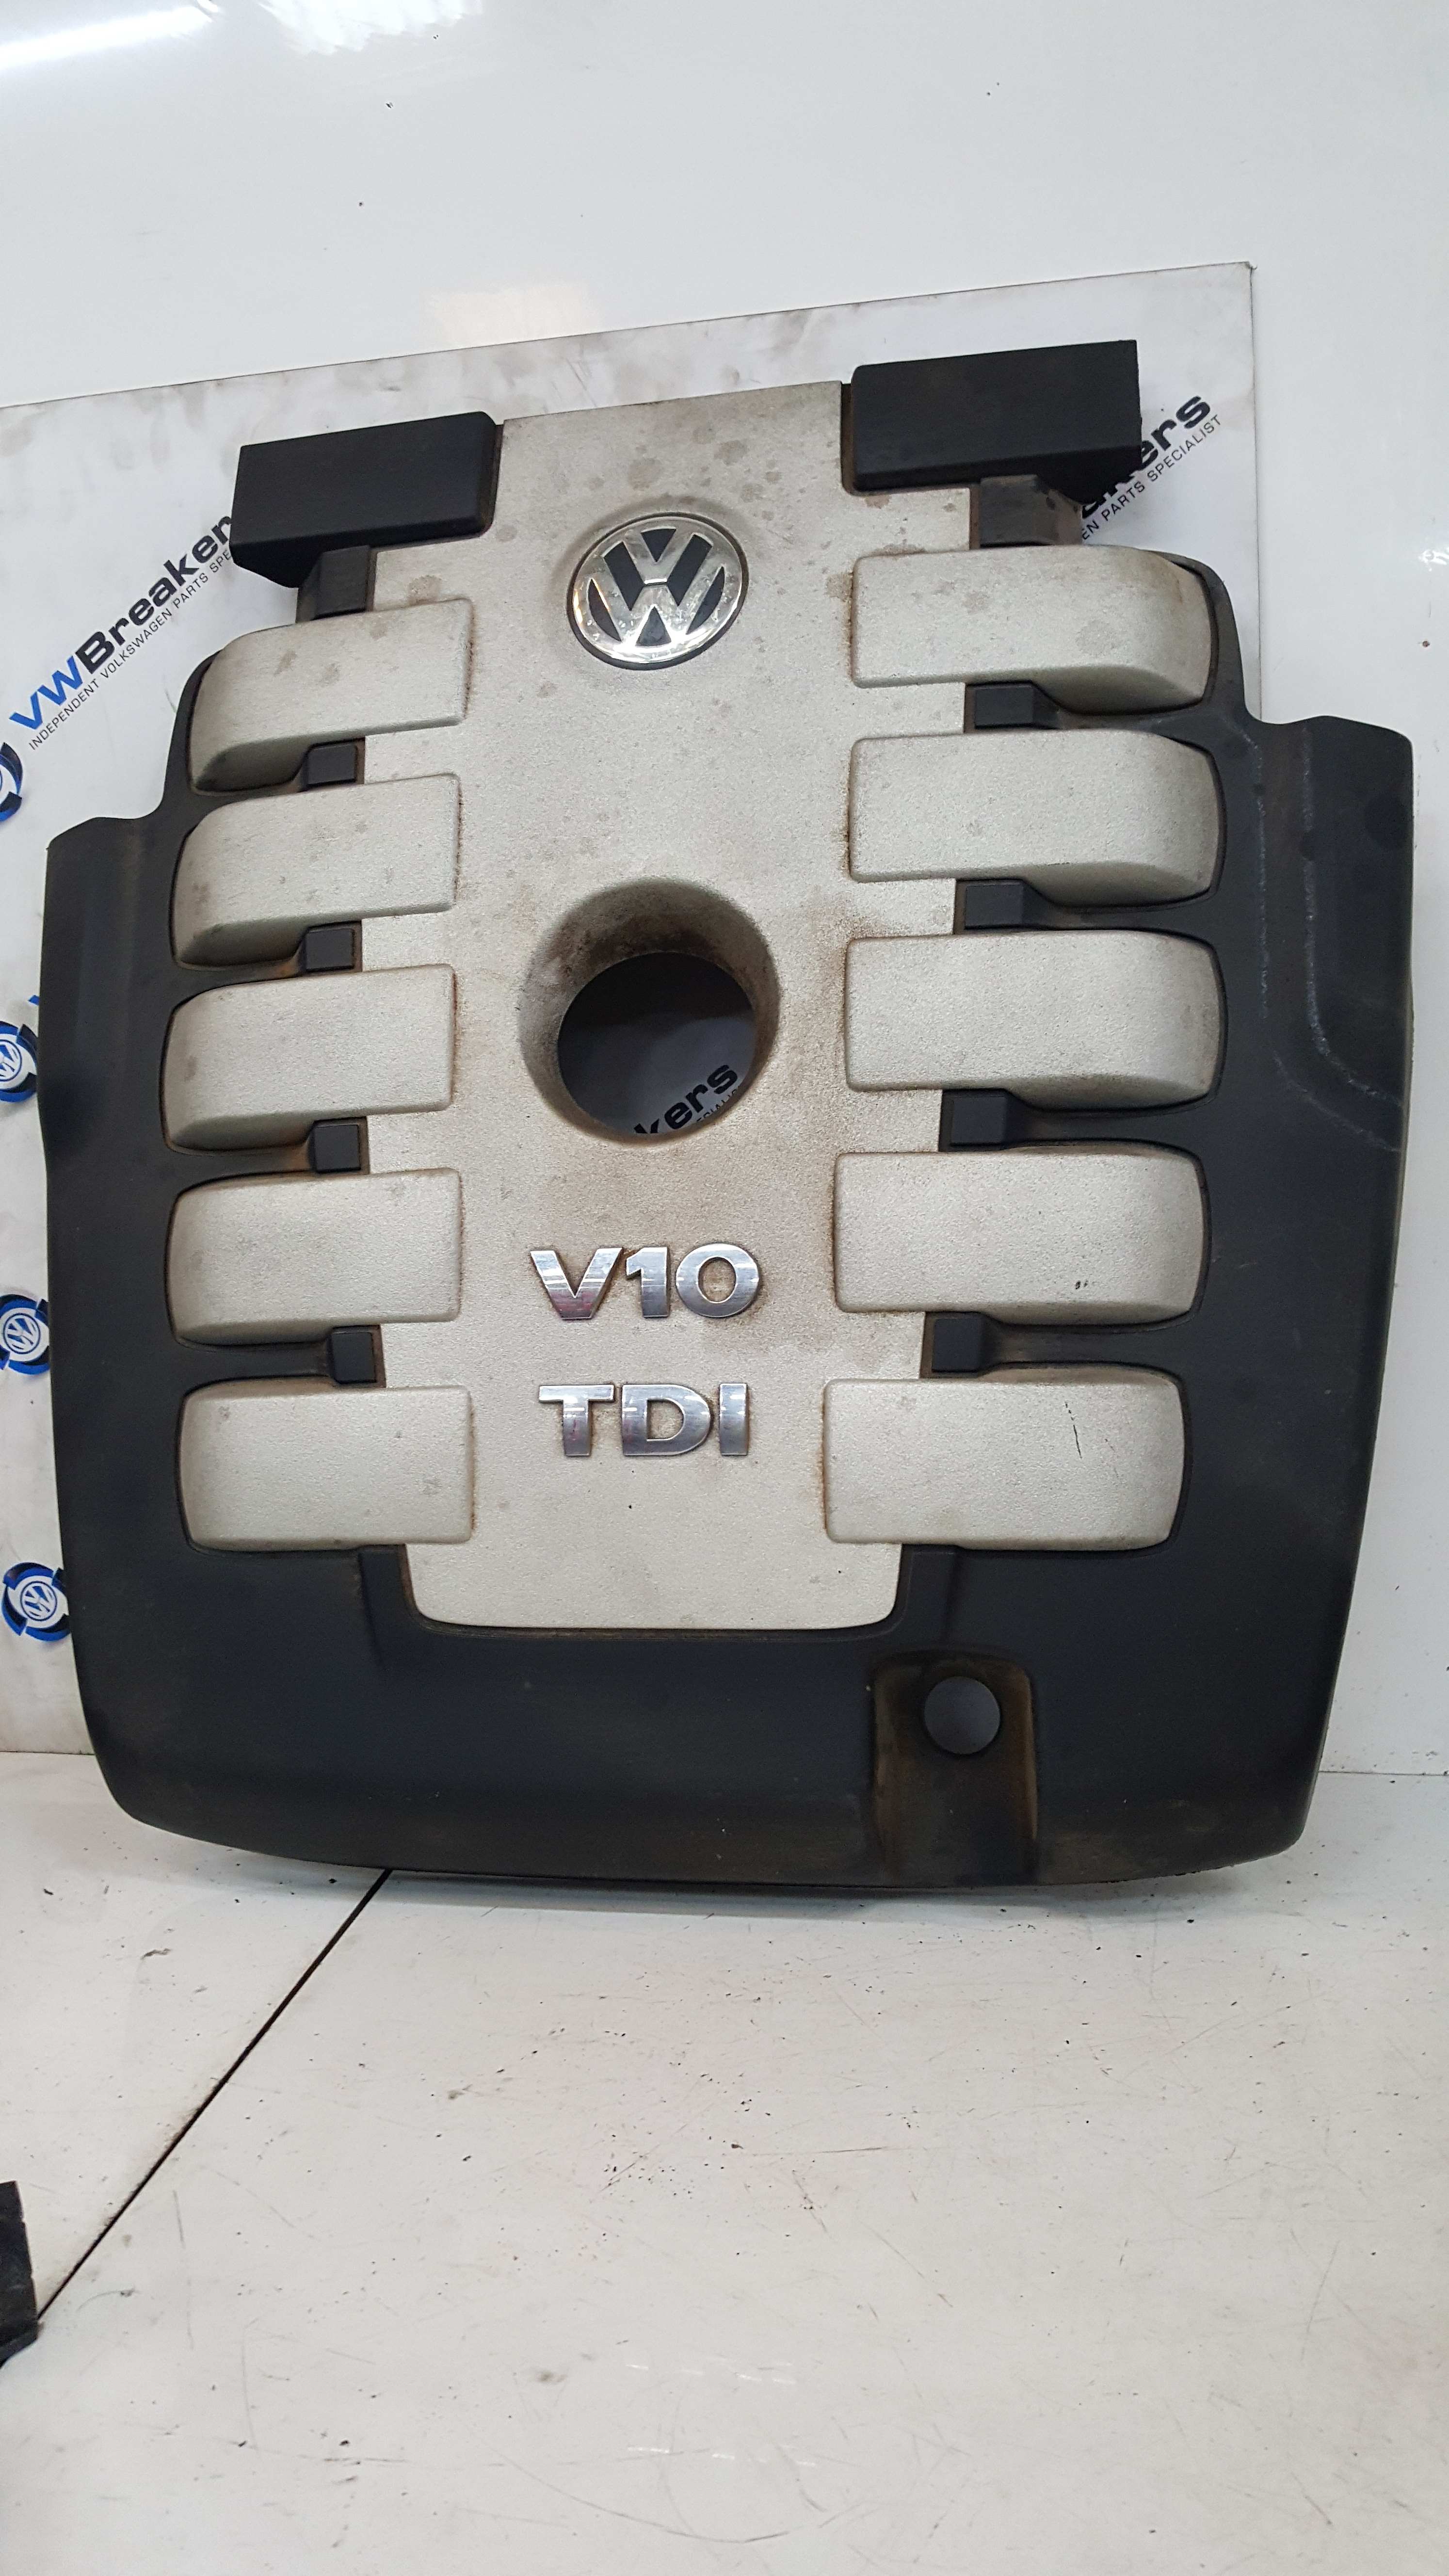 Volkswagen Touareg 2002-2007 V10 TDI Engine Cover Plastic 